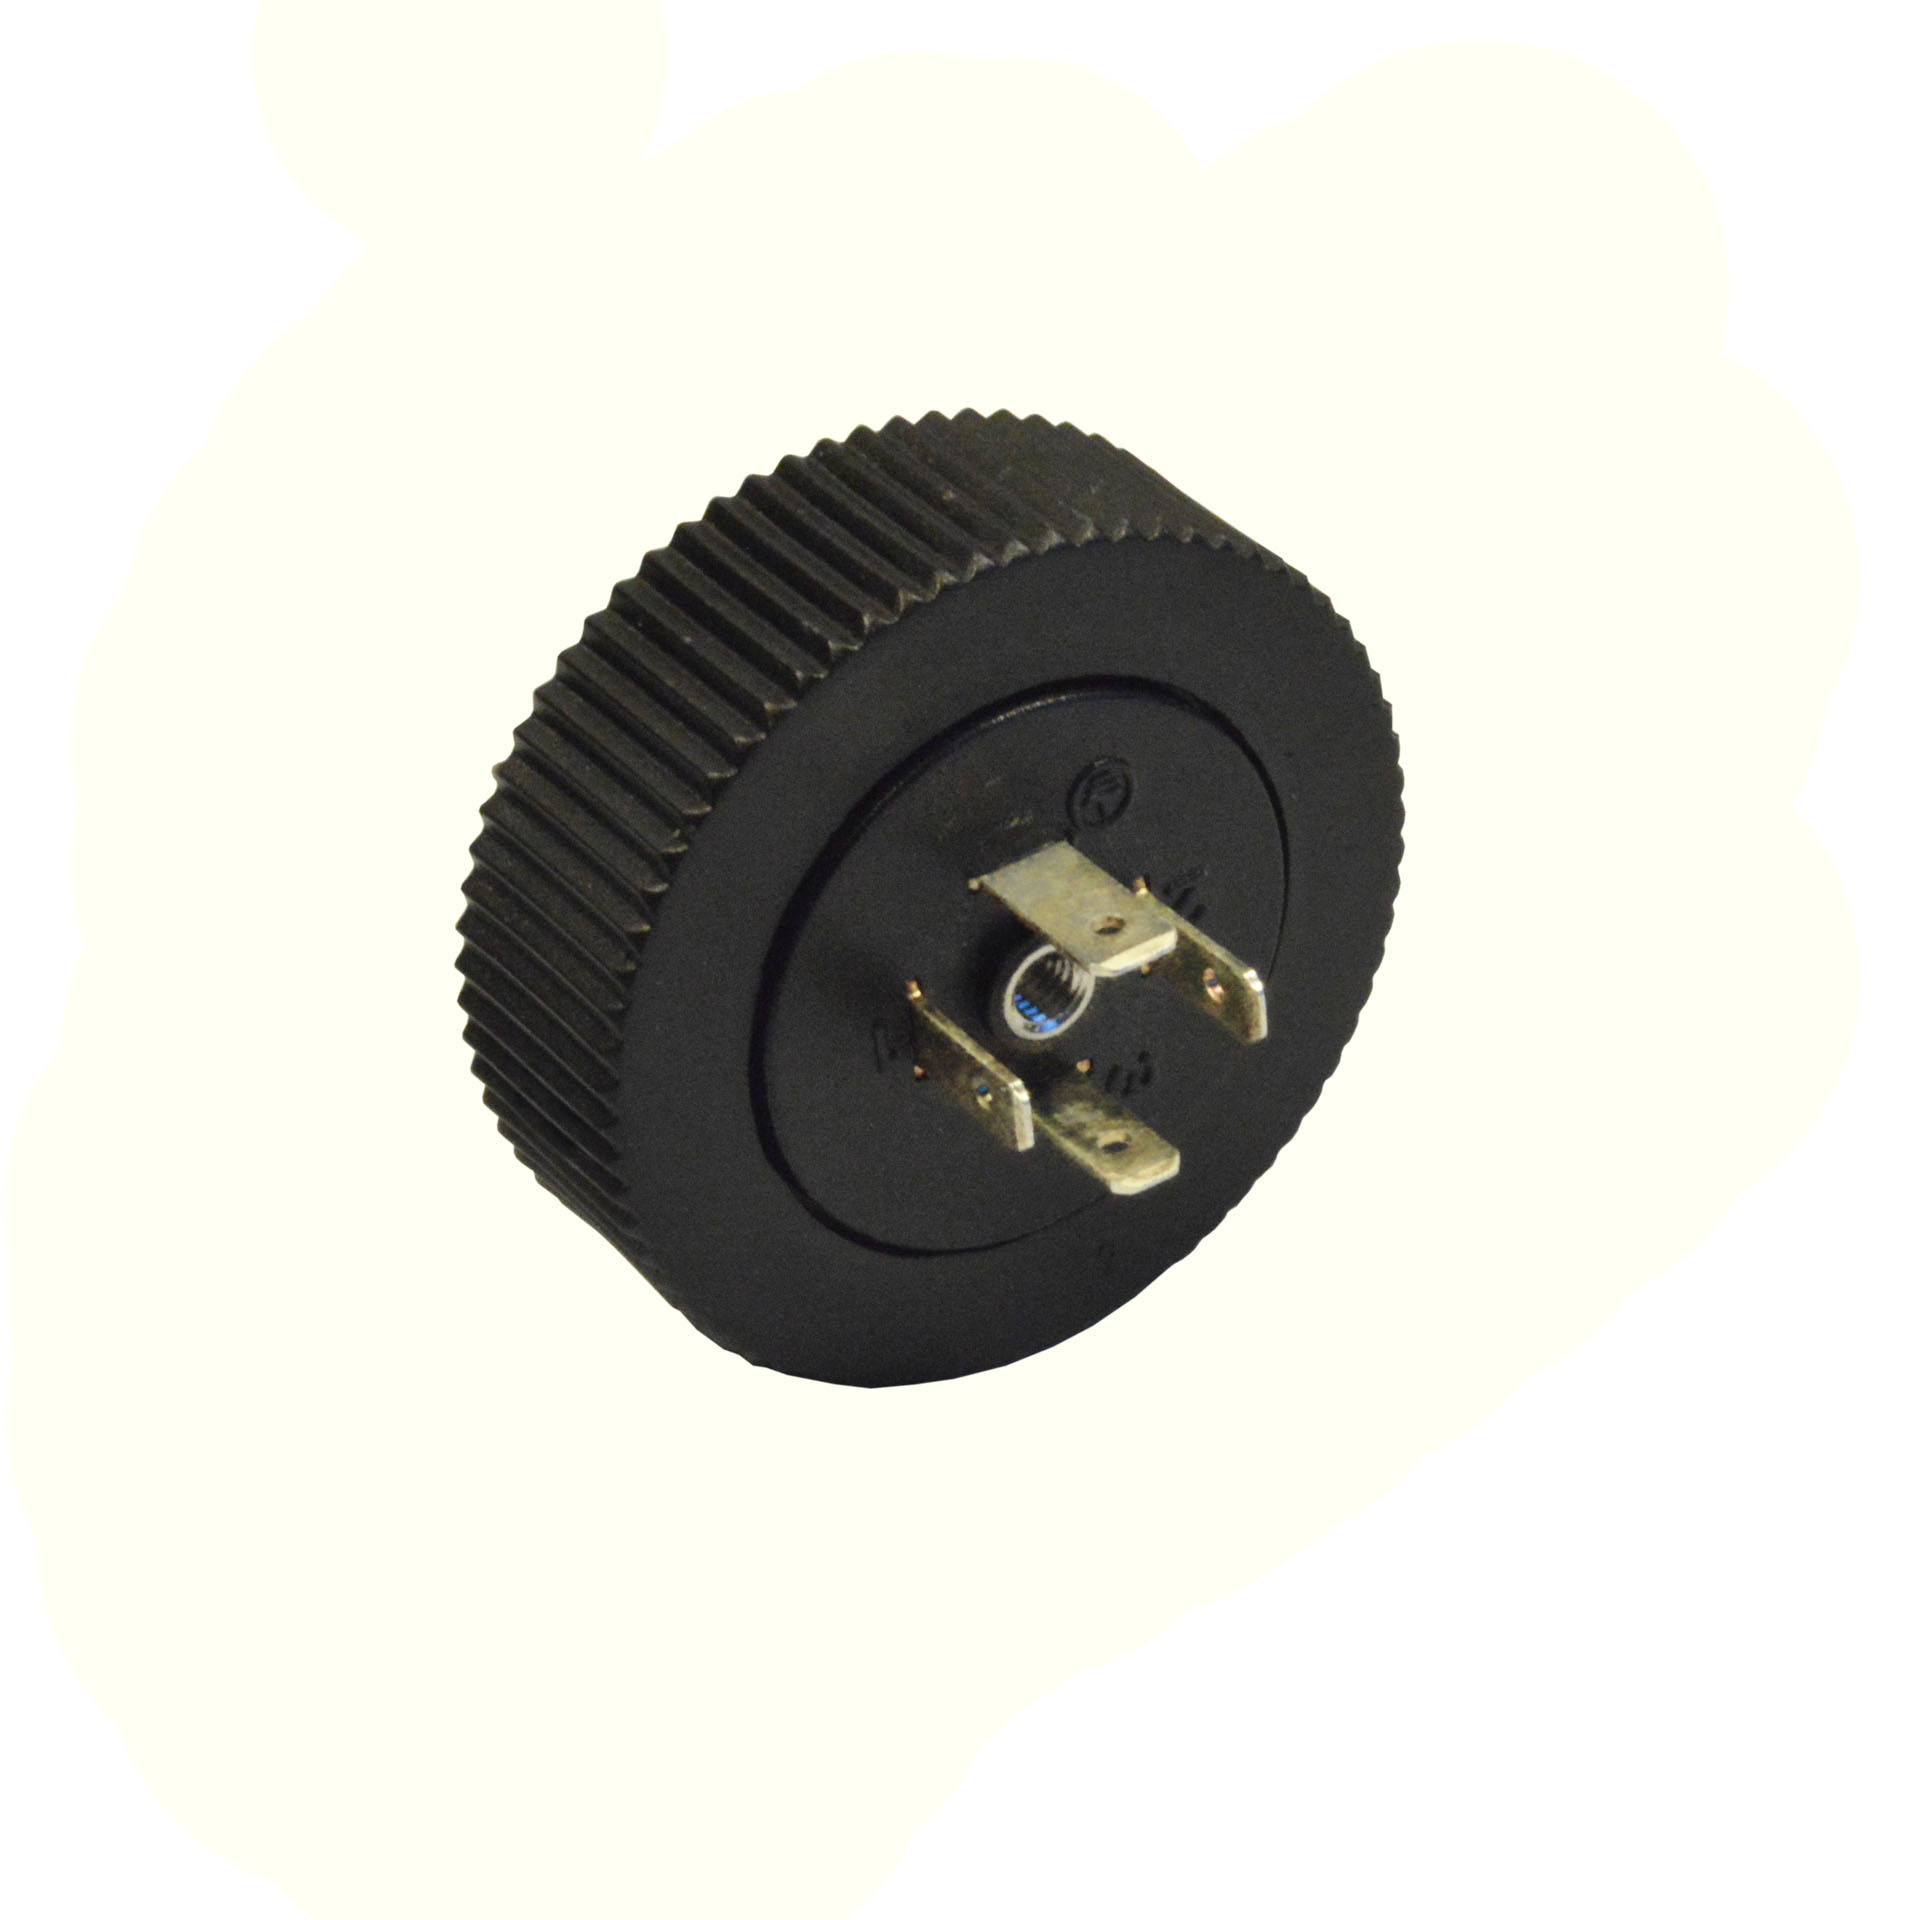 Basetta rotonda,9.4mm,3p.+t.,con vite centrale APERTA c/oring,con ghiera M27x1,5